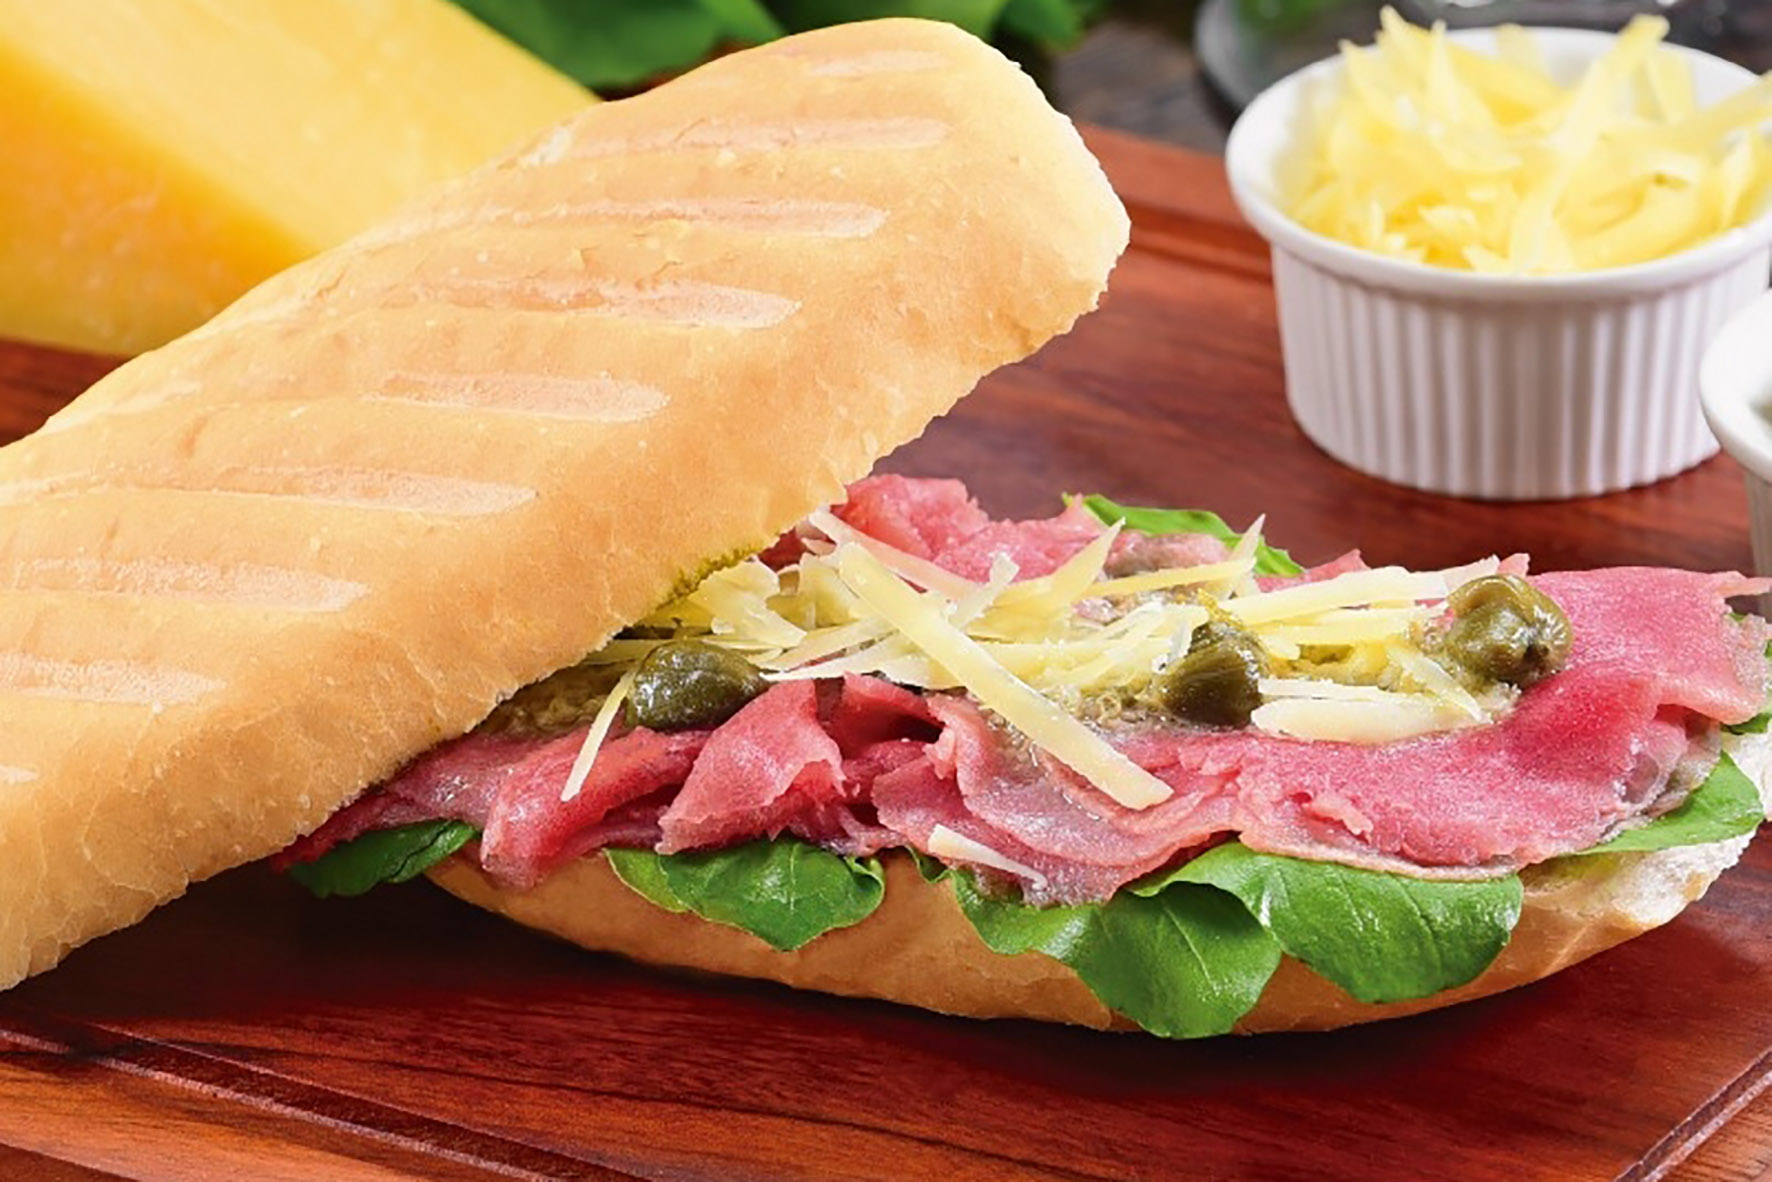 Os sanduíches e as saladas estão entre os pratos mais pedidos do Au-Au Lanches. Mas a rede de lanchonetes traz em seu cardápio surpresas